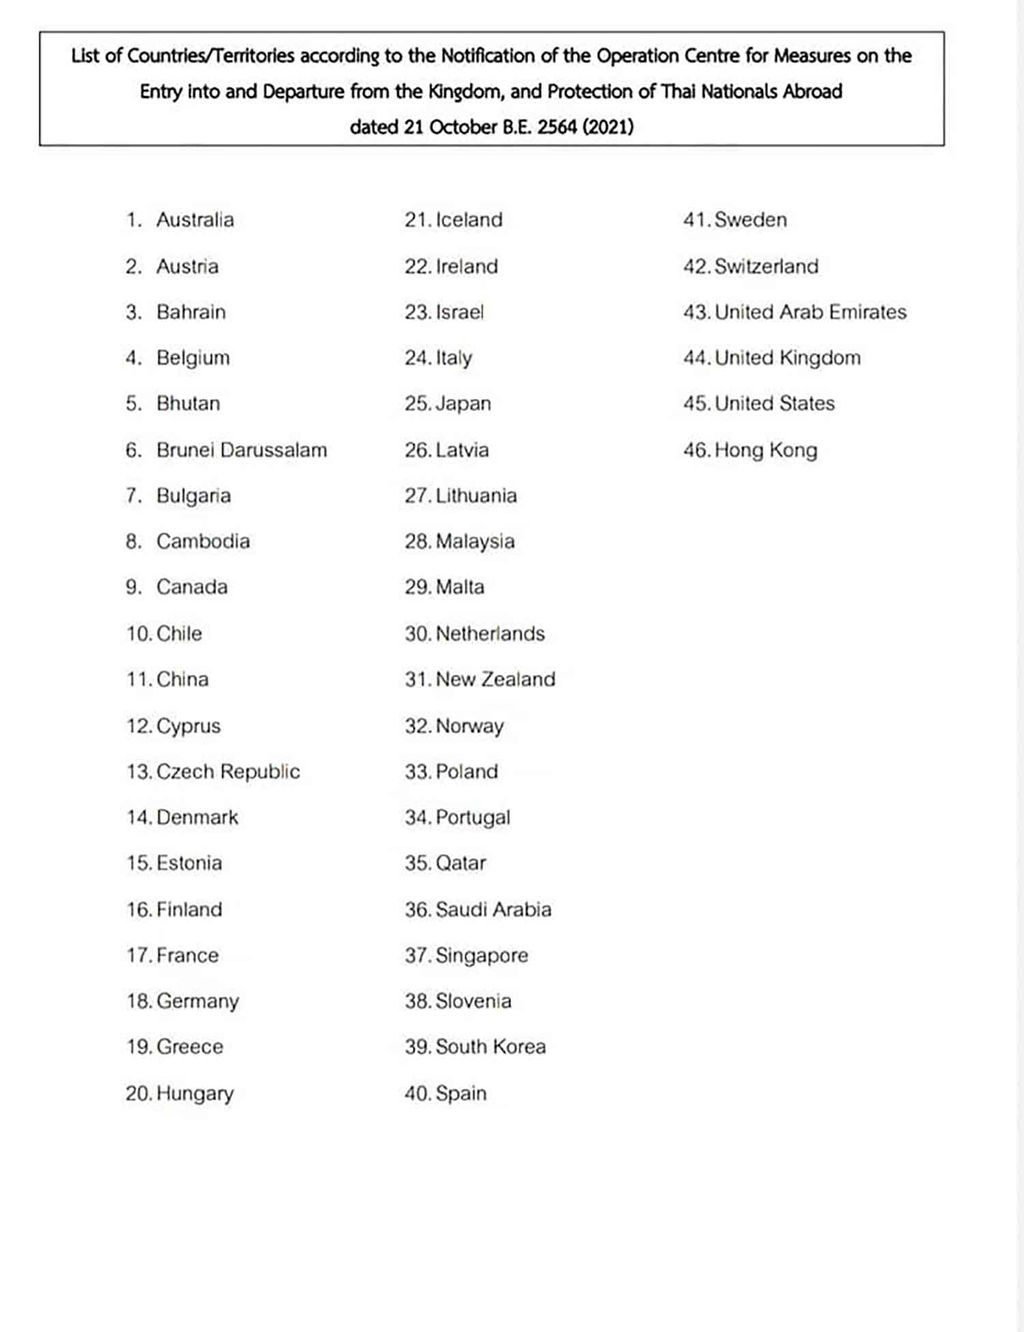 Das Außenministerium hat die Liste der 46 Länder - Gebietsländer veröffentlicht, die für eine quarantänefreie Einreise ohne Gebietsbeschränkungen in Frage kommen.